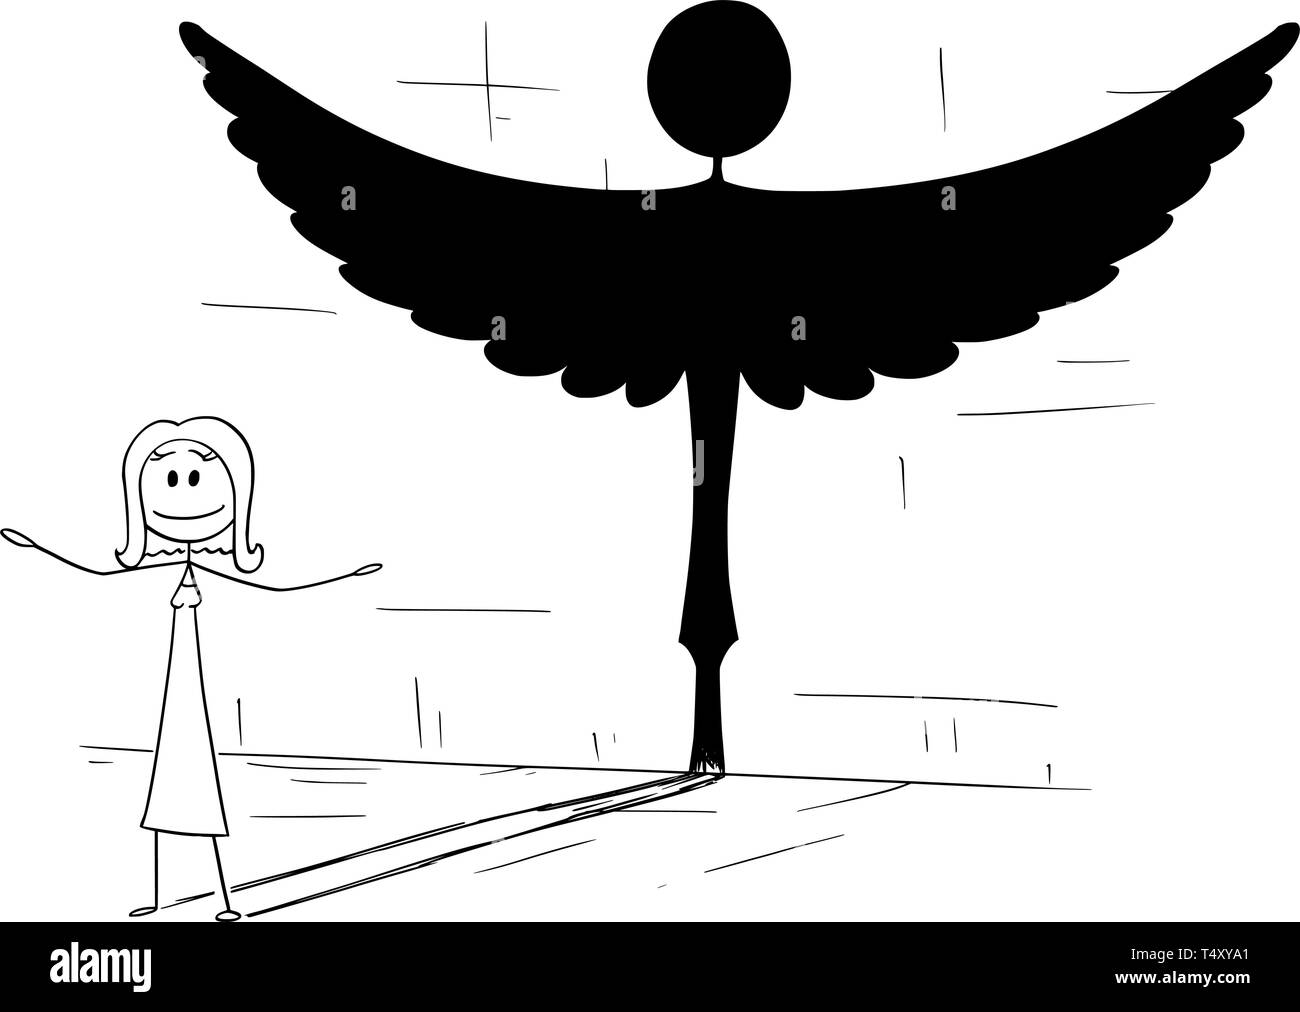 Cartoon Strichmännchen Zeichnung konzeptuelle Abbildung: gute Frau oder eine Person werfen Schatten in Form der Engel. Metapher oder wahre Persönlichkeit im Inneren verborgen. Stock Vektor